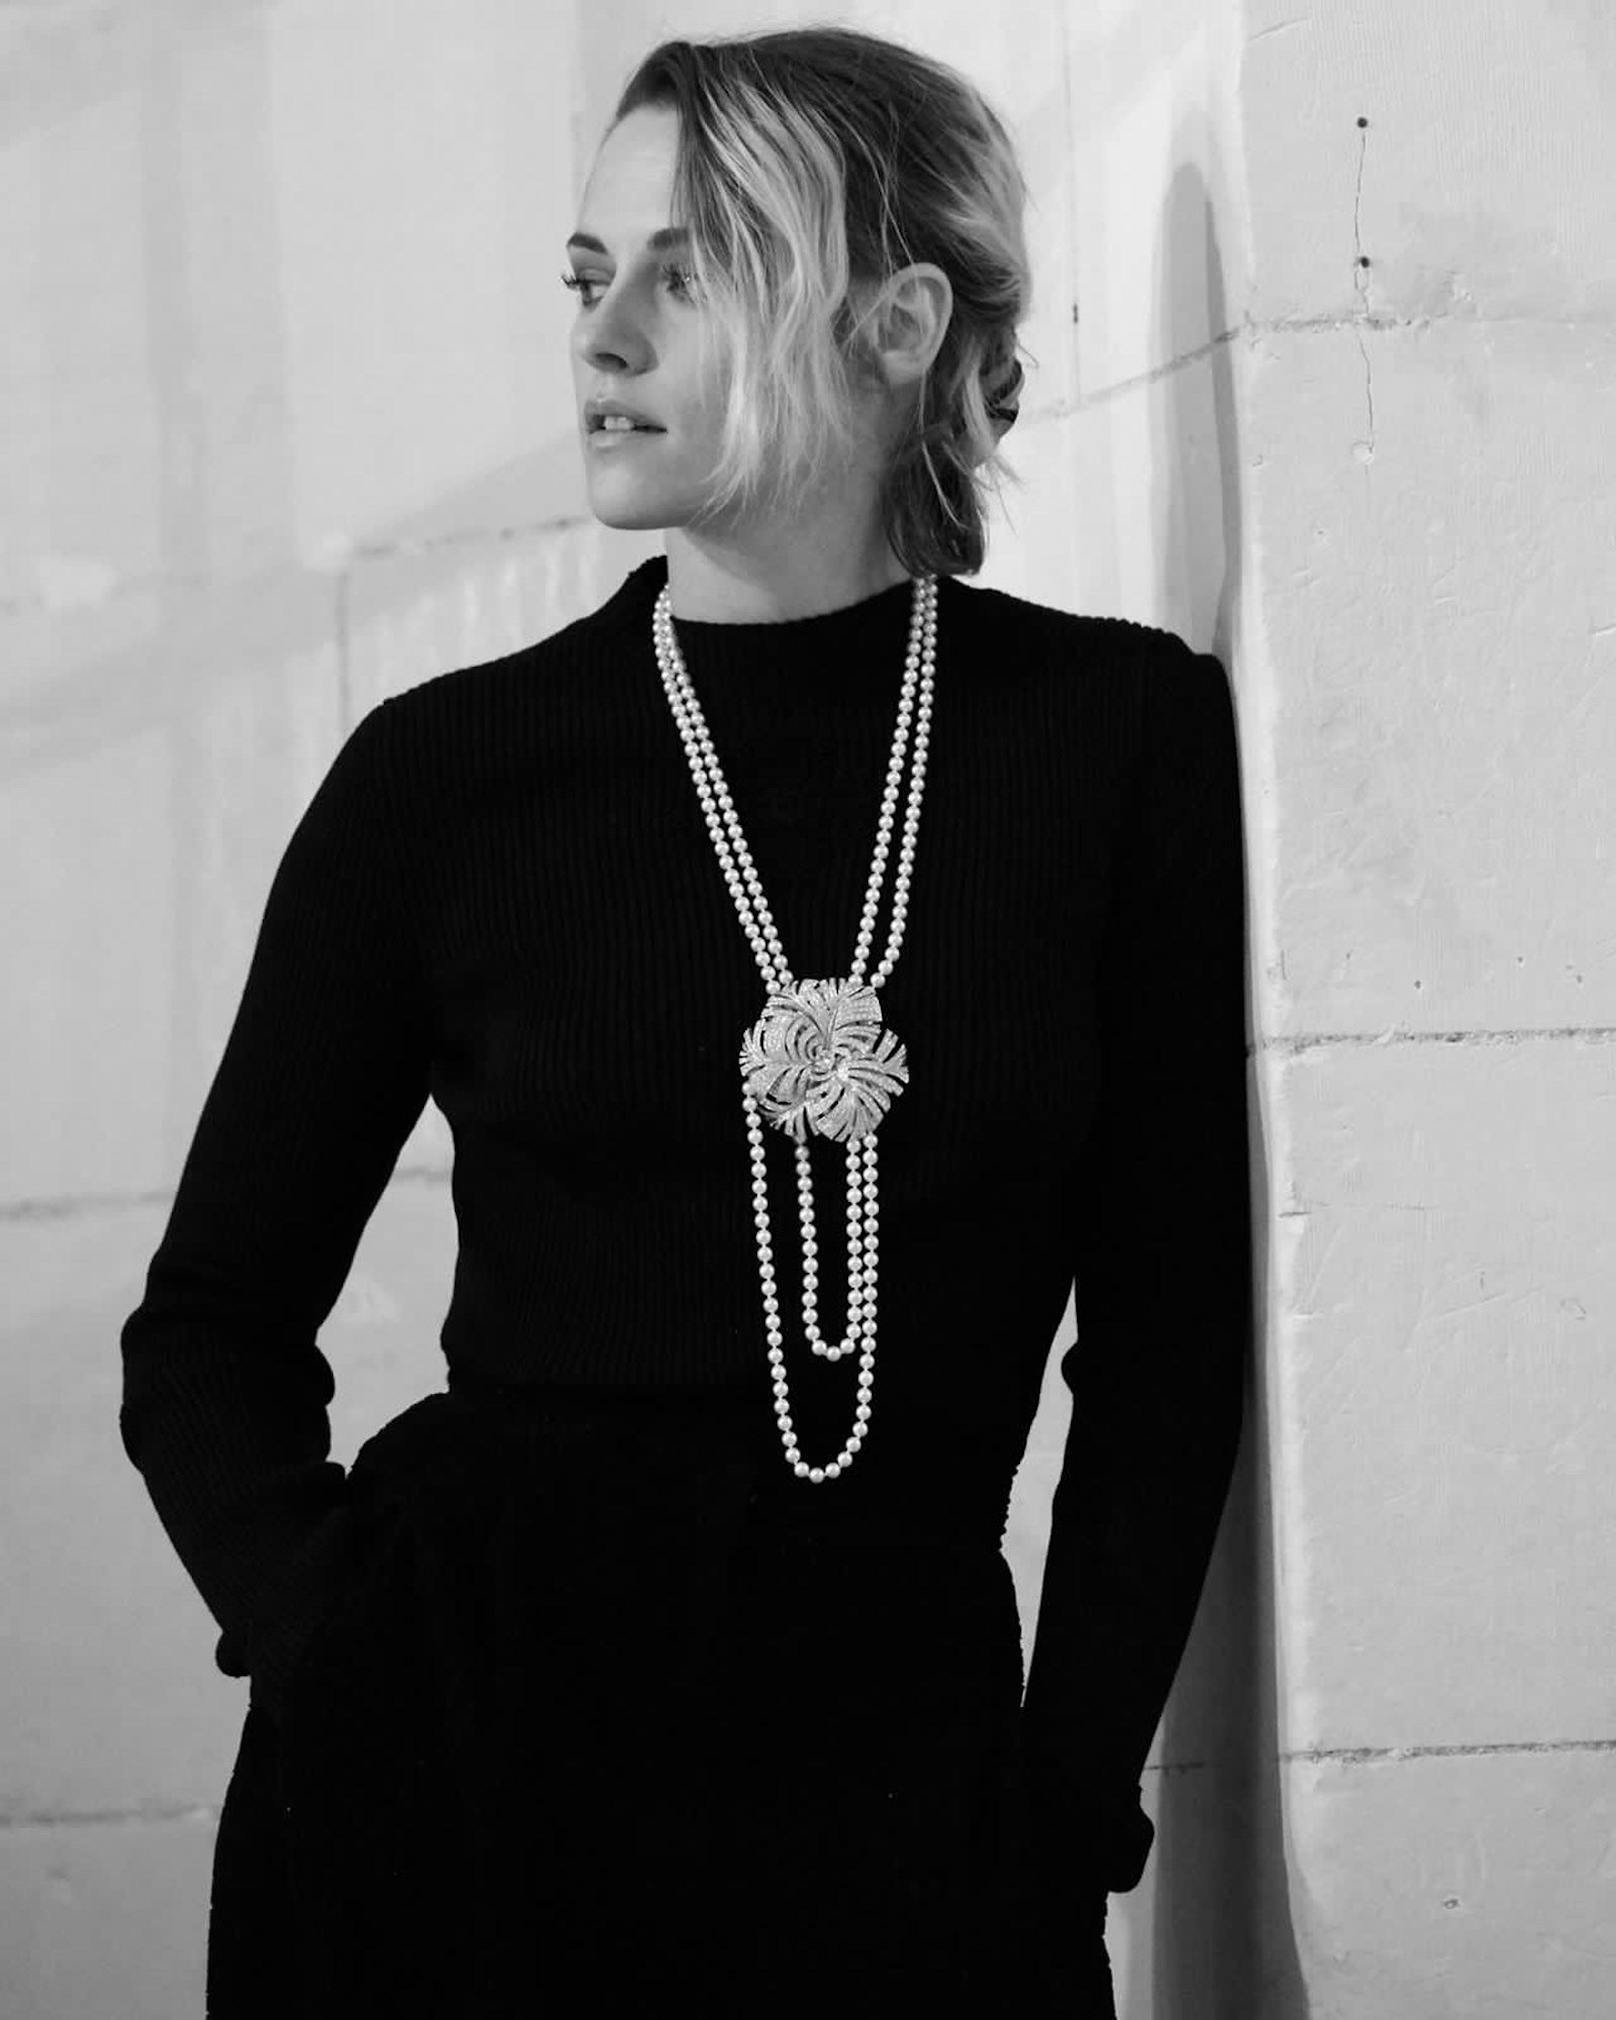 Kristen Stewart ist das Gesicht der neuen Kampagne und war deshalb der einzige Gast der "Chanel Métiers d'art"-Show 2021